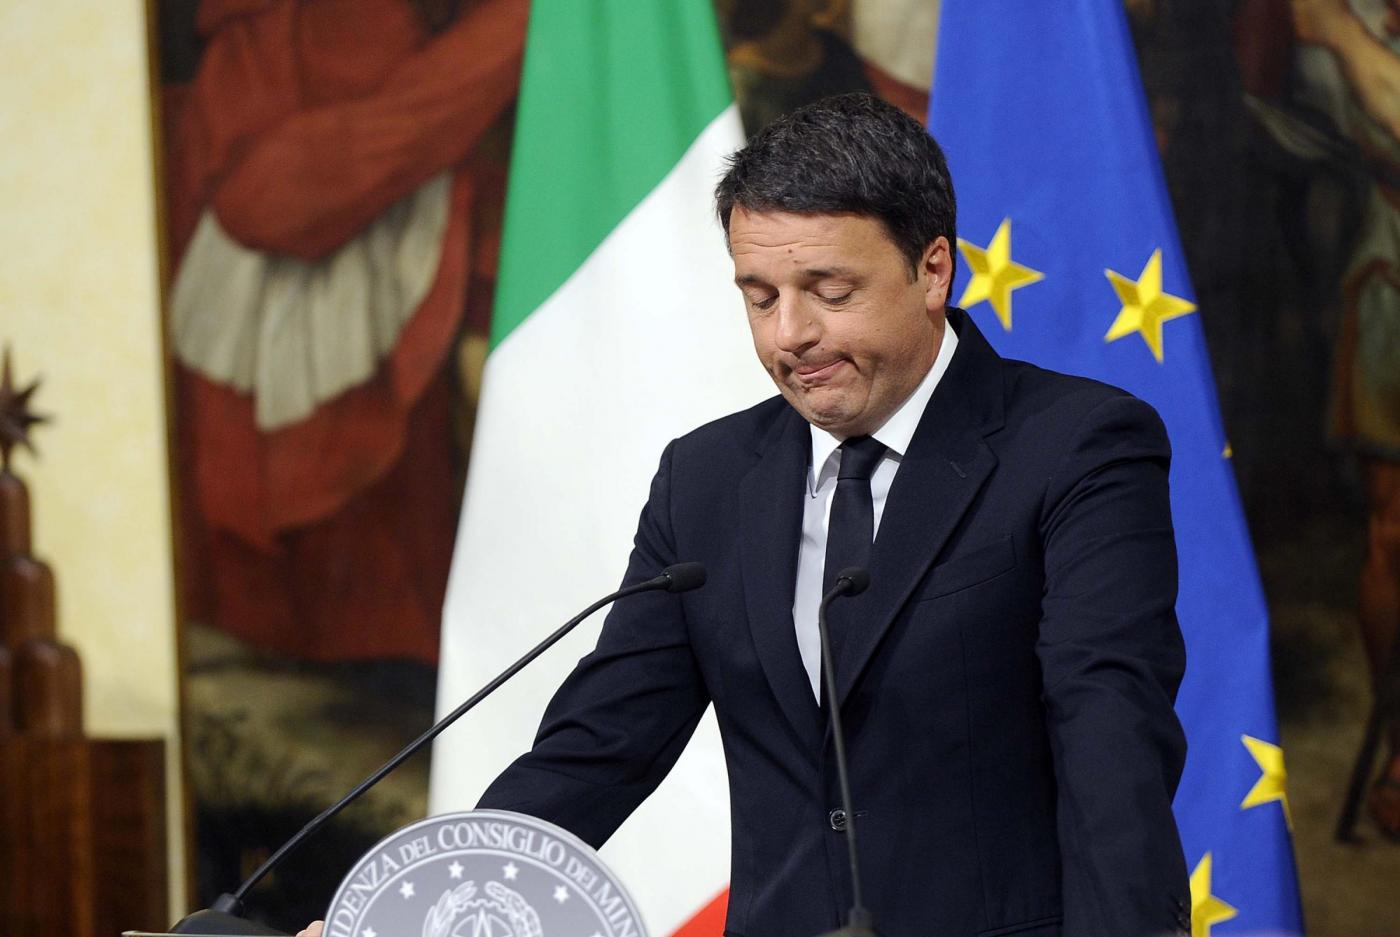 Palazzo Chigi Conferenza Matteo Renzi dopo i risultati del referendum costituzionale